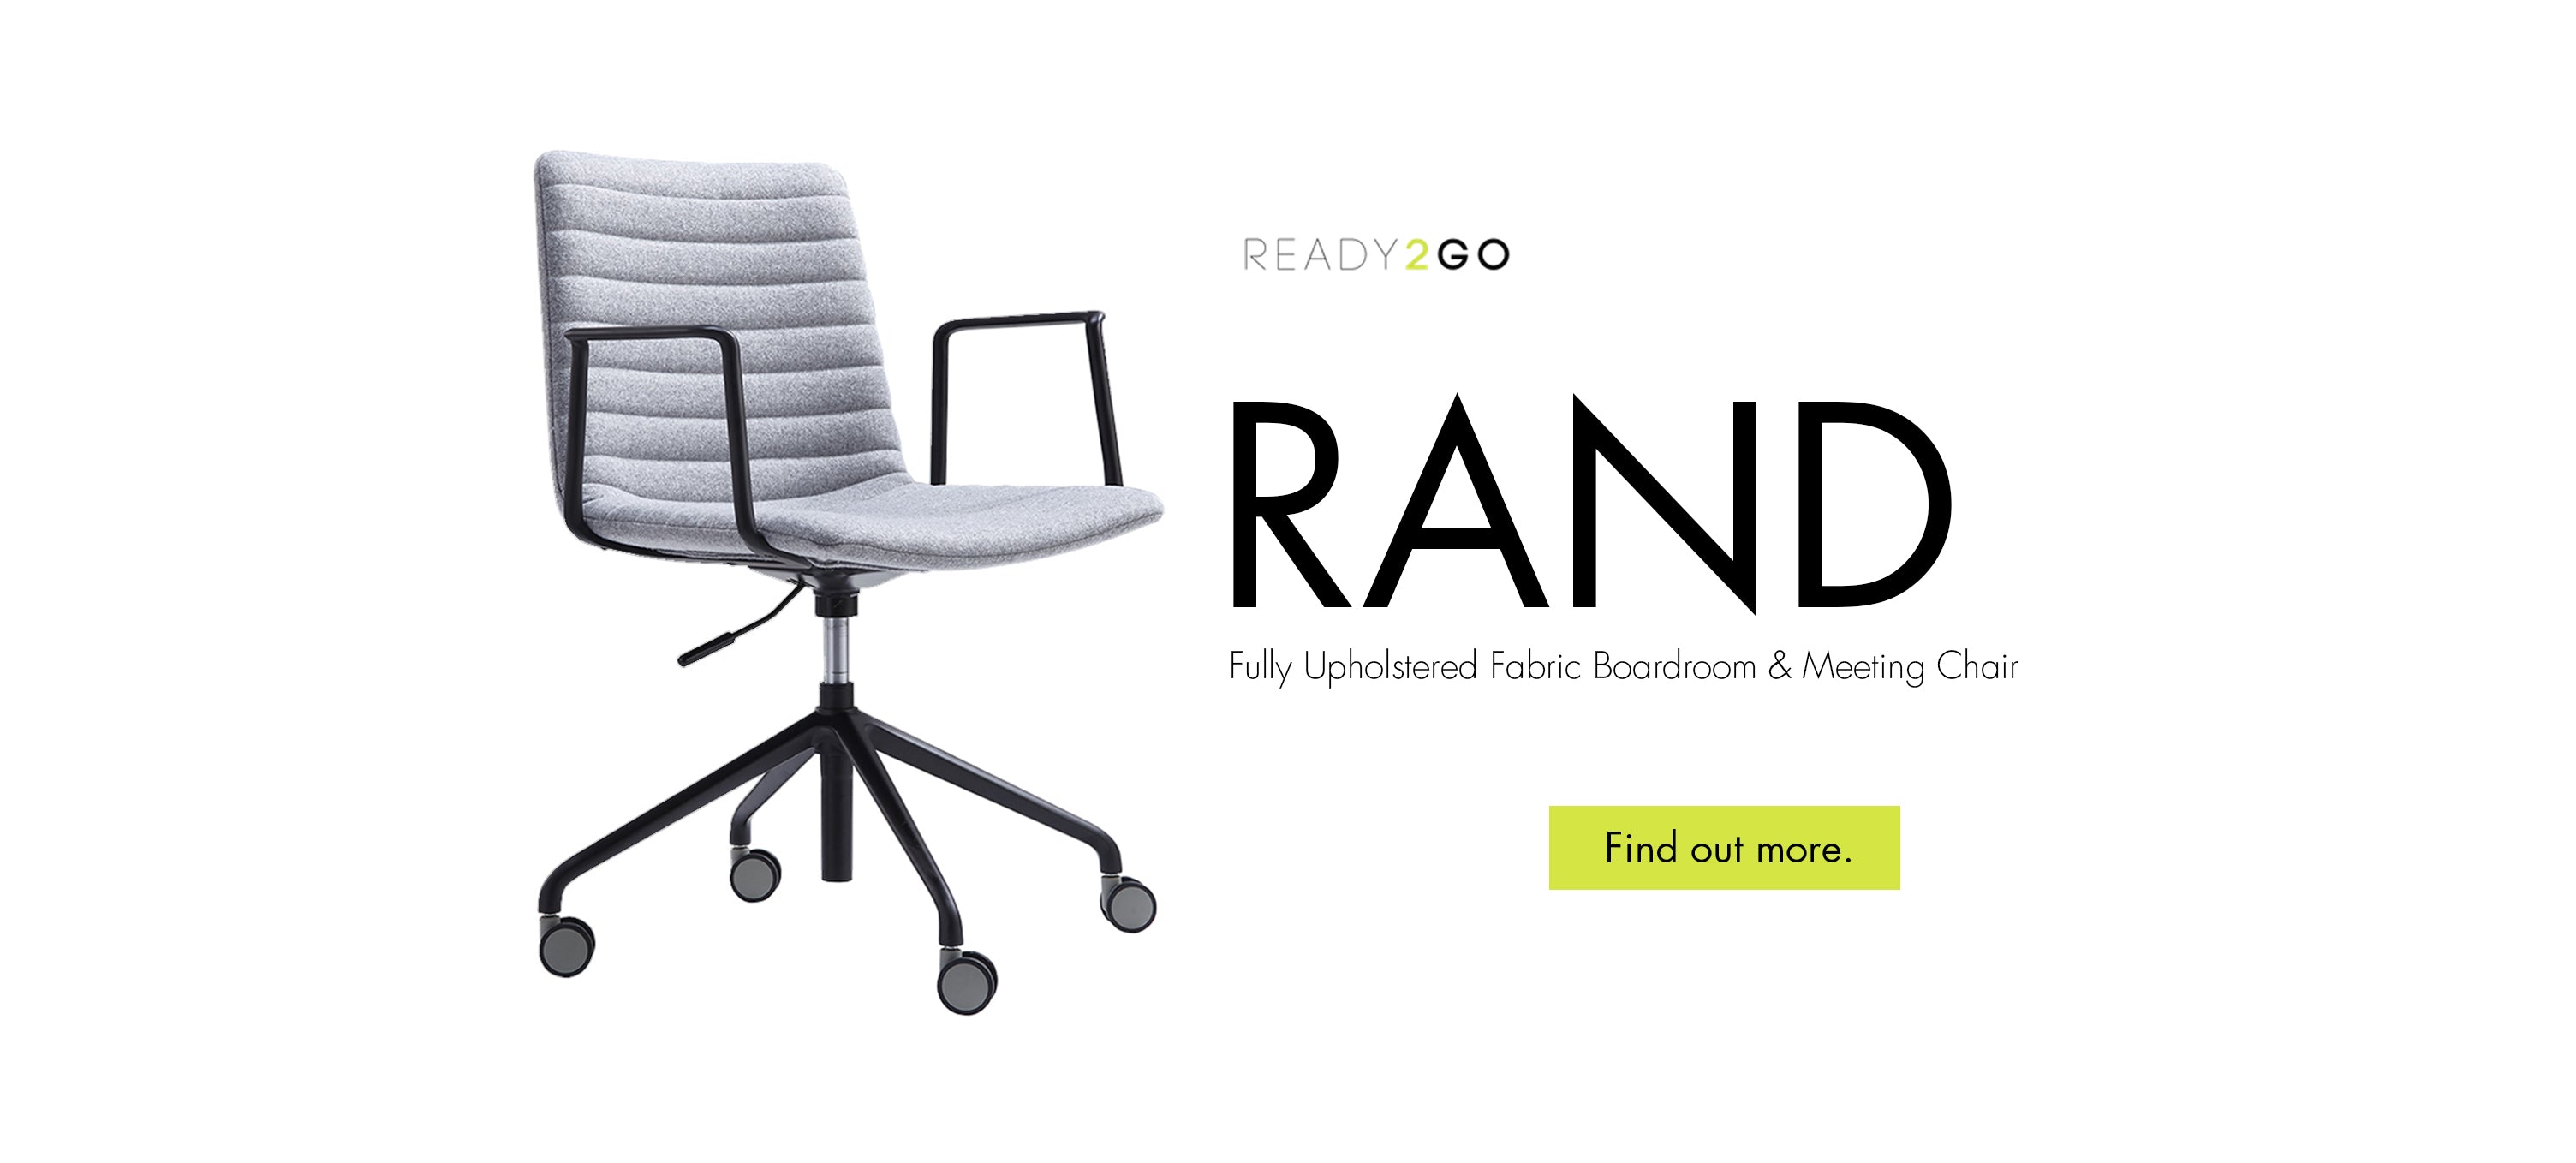 Ready 2 Go Rand chair